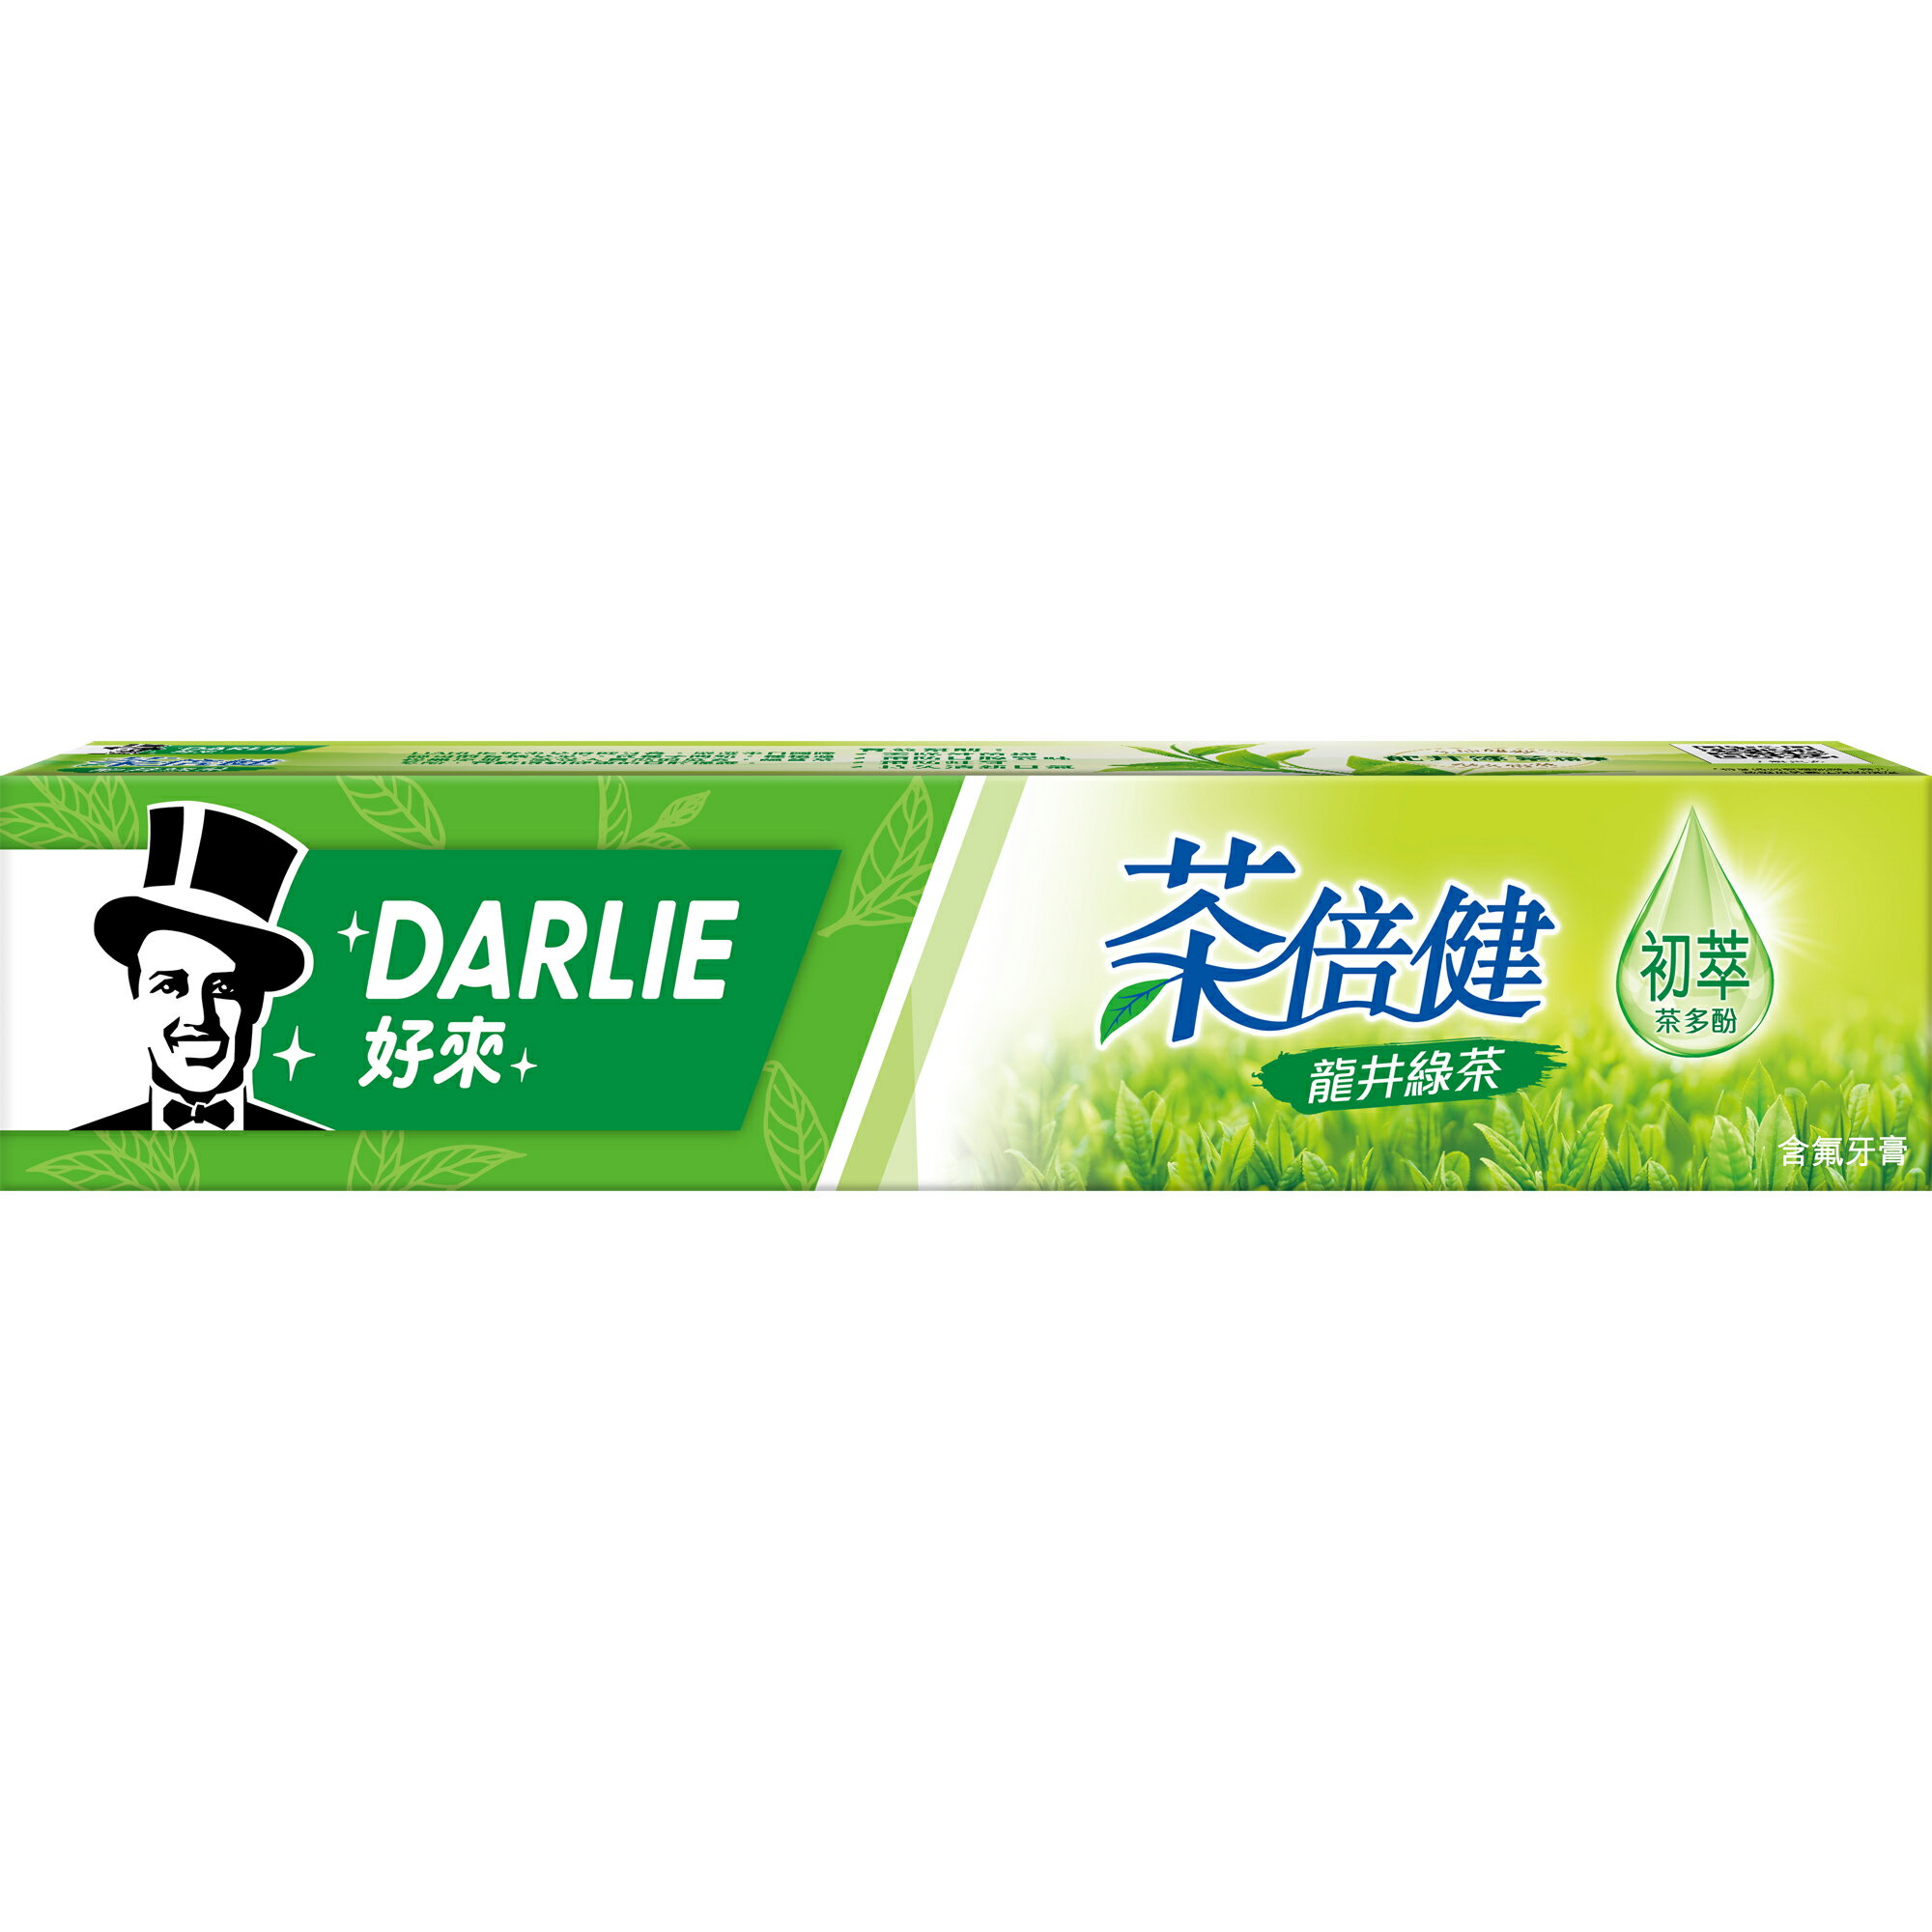 好來DARLIE 茶倍健牙膏 龍井綠茶 160g